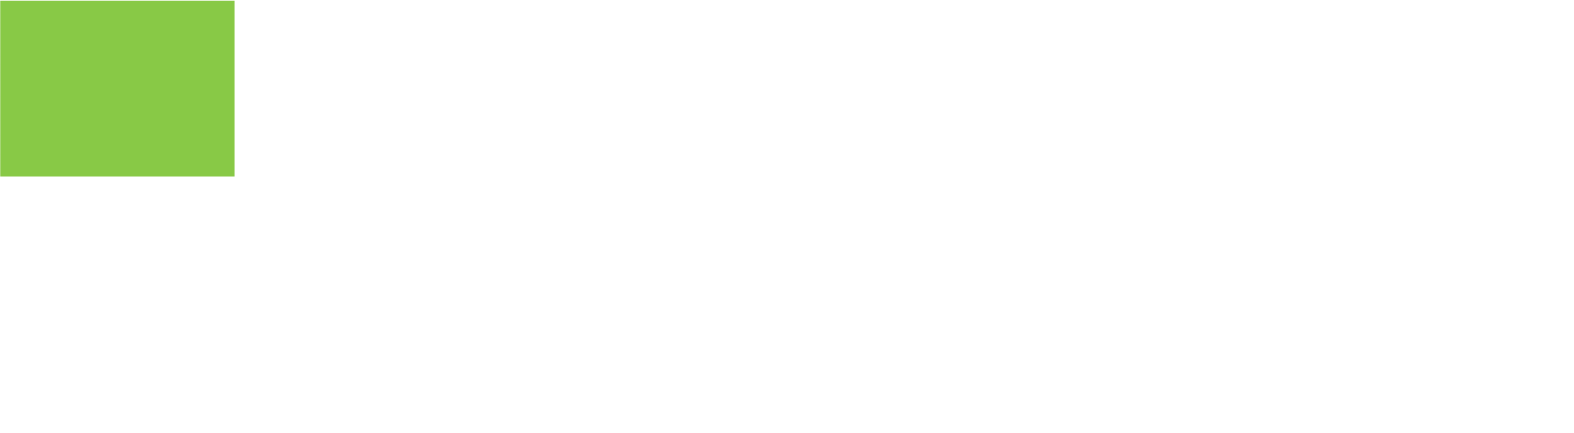 Ingevity logo large for dark backgrounds (transparent PNG)